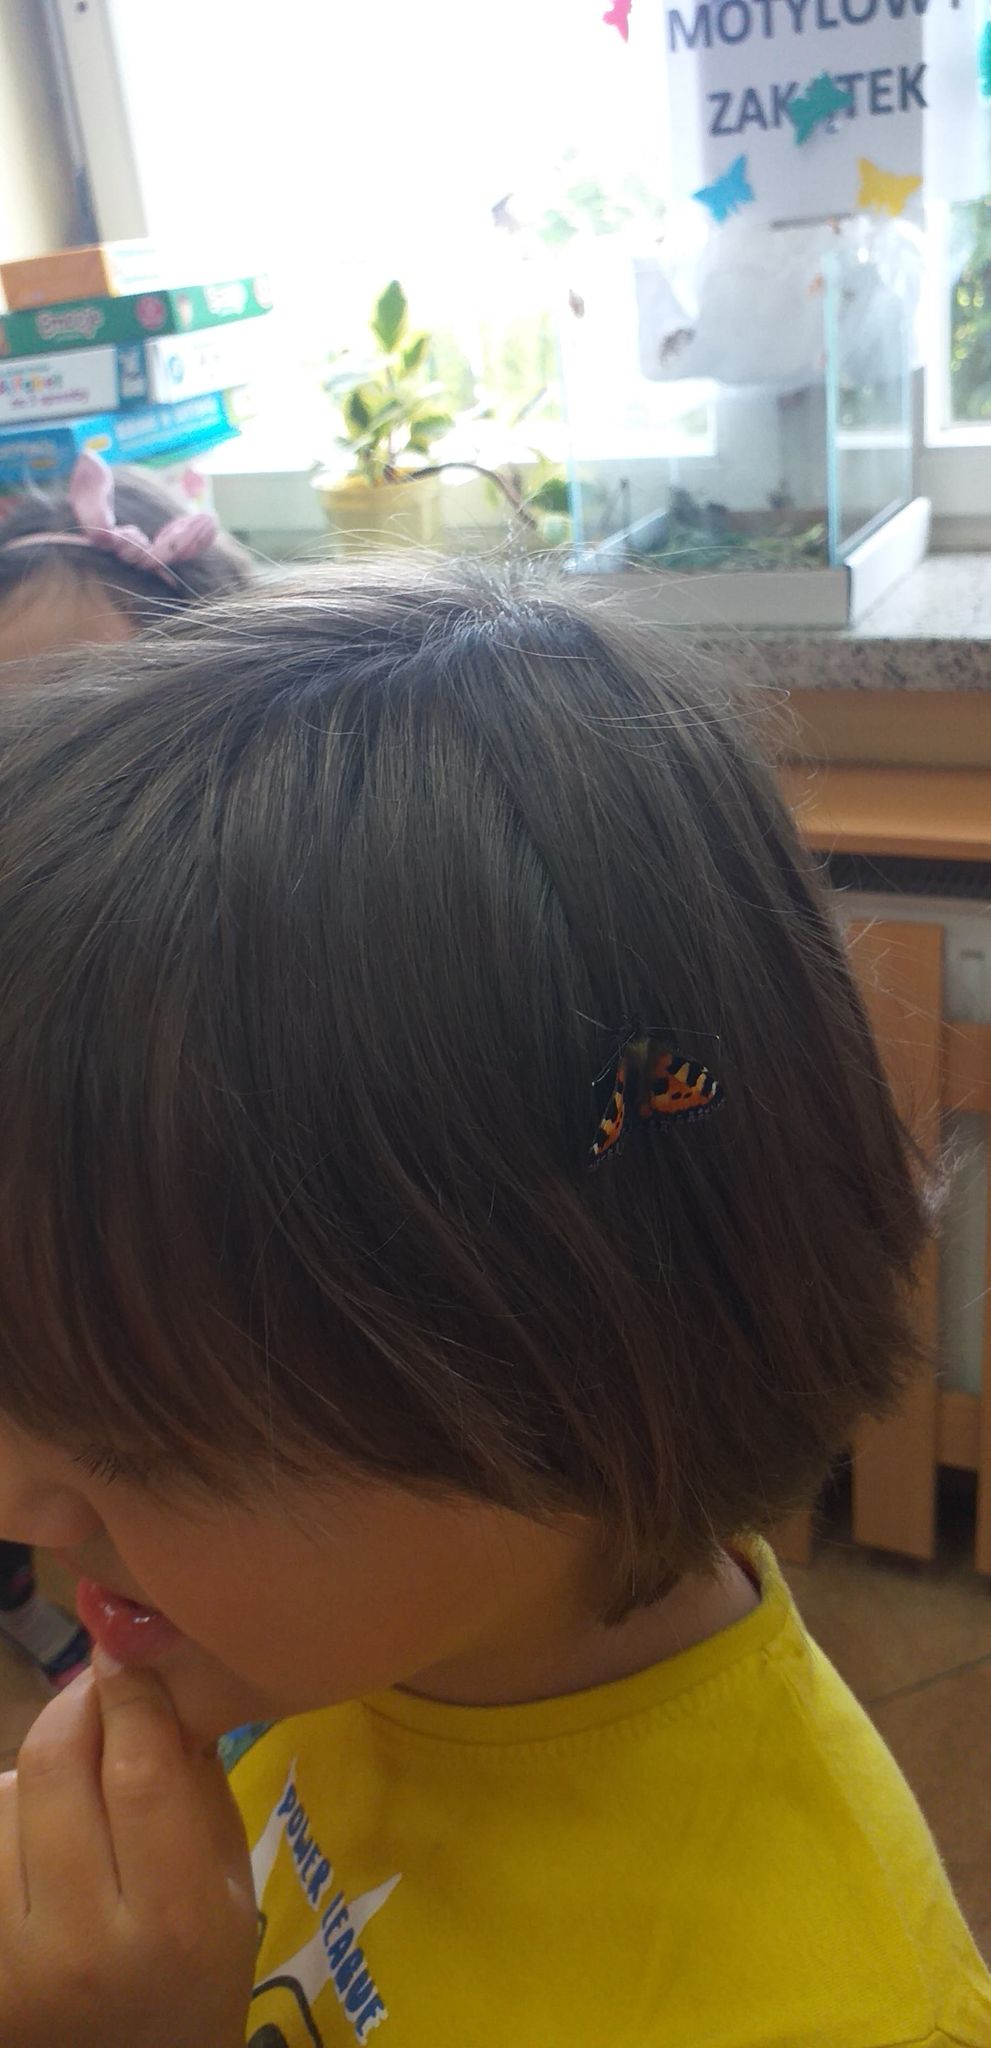 Motyl na włosach dziewczynki